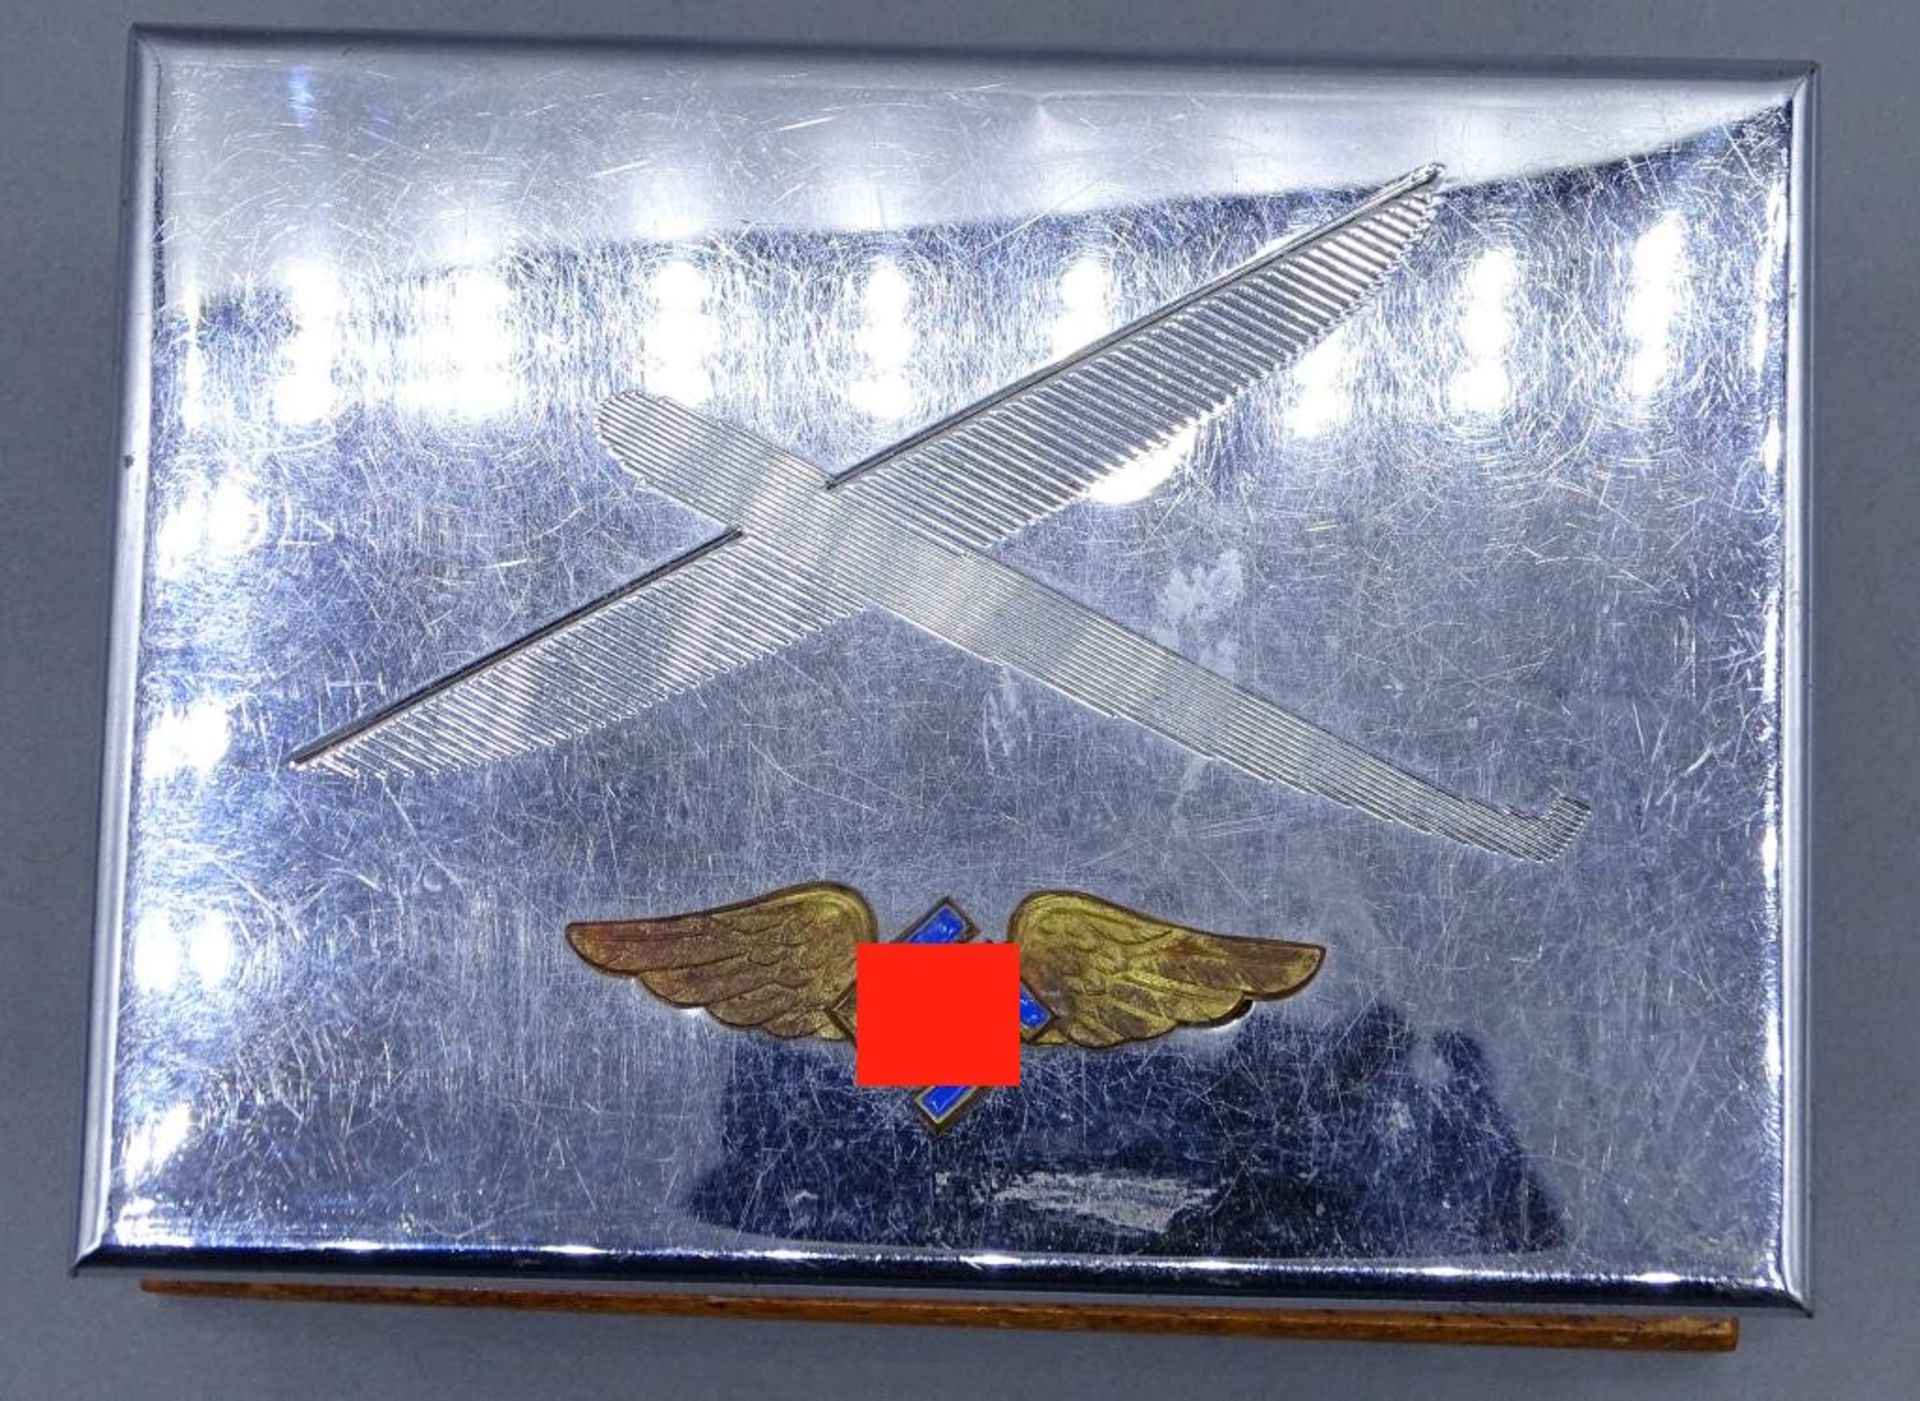 Deckeldose mit Fliegersymbol und Hoheitszeichen,versilbert,H- 5,0cm, 13x9,5cm- - -22.61 % buyer's - Bild 4 aus 4